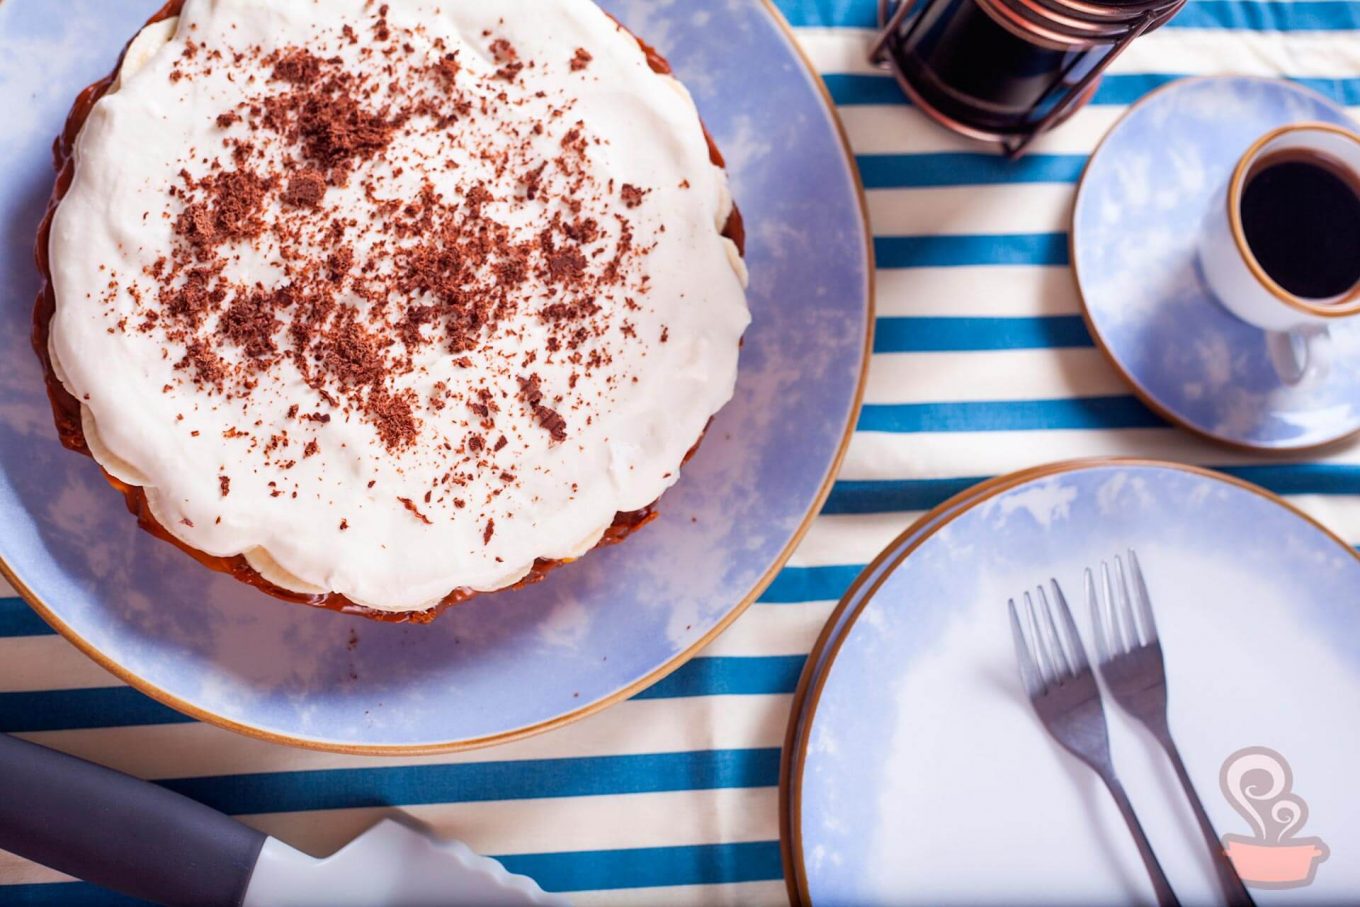 Foto feita de cima mostra uma torta com cobertura branca, prato de sobremesa e xícara de café